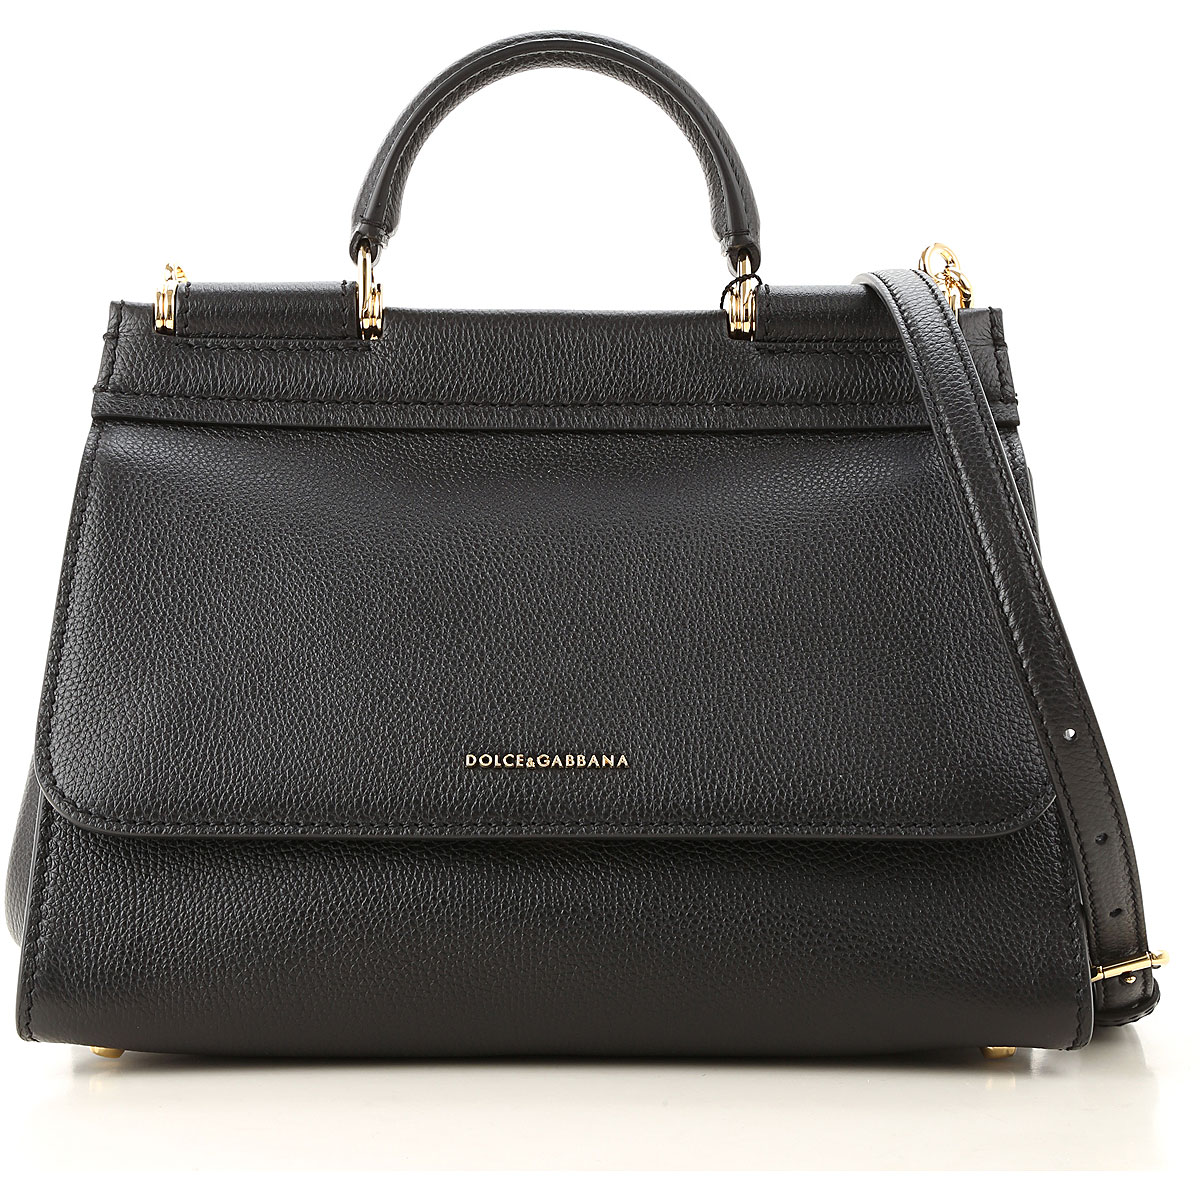 Handbags Dolce & Gabbana, Style code: bb6755-aa409-80999